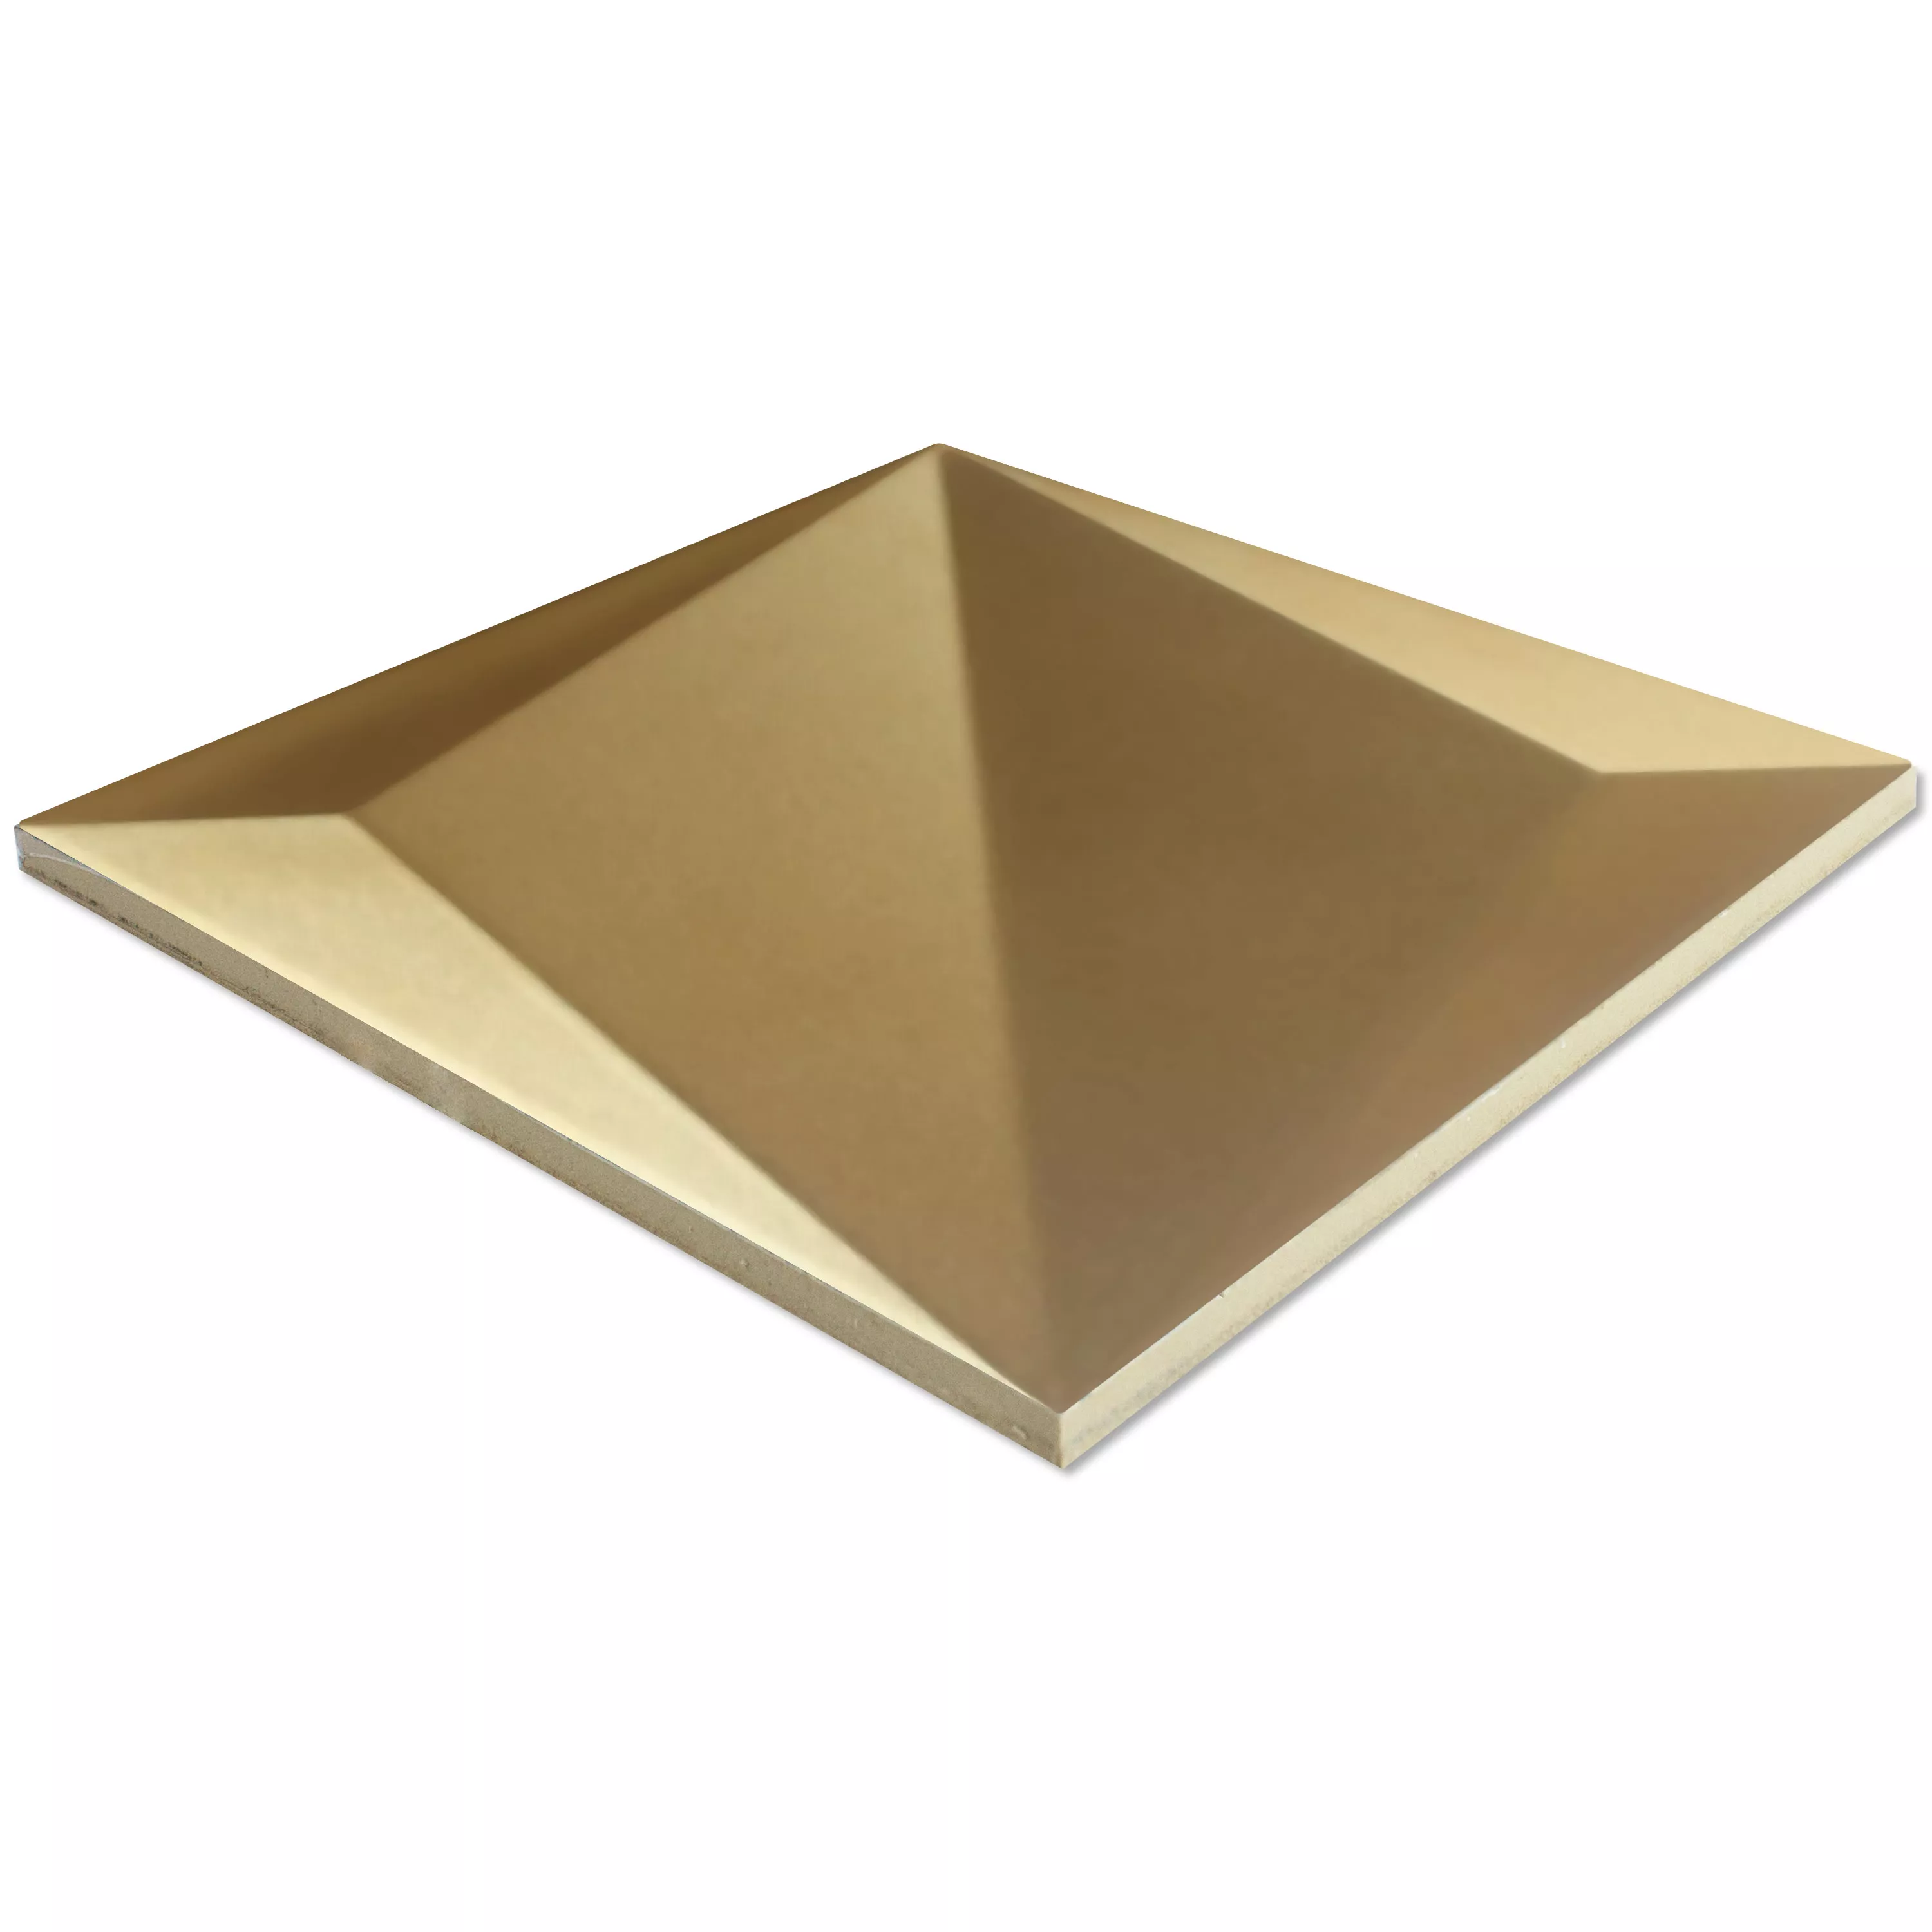 Πλακάκια Tοίχου Skyline 3D Origami Παγωμένος Χρυσός